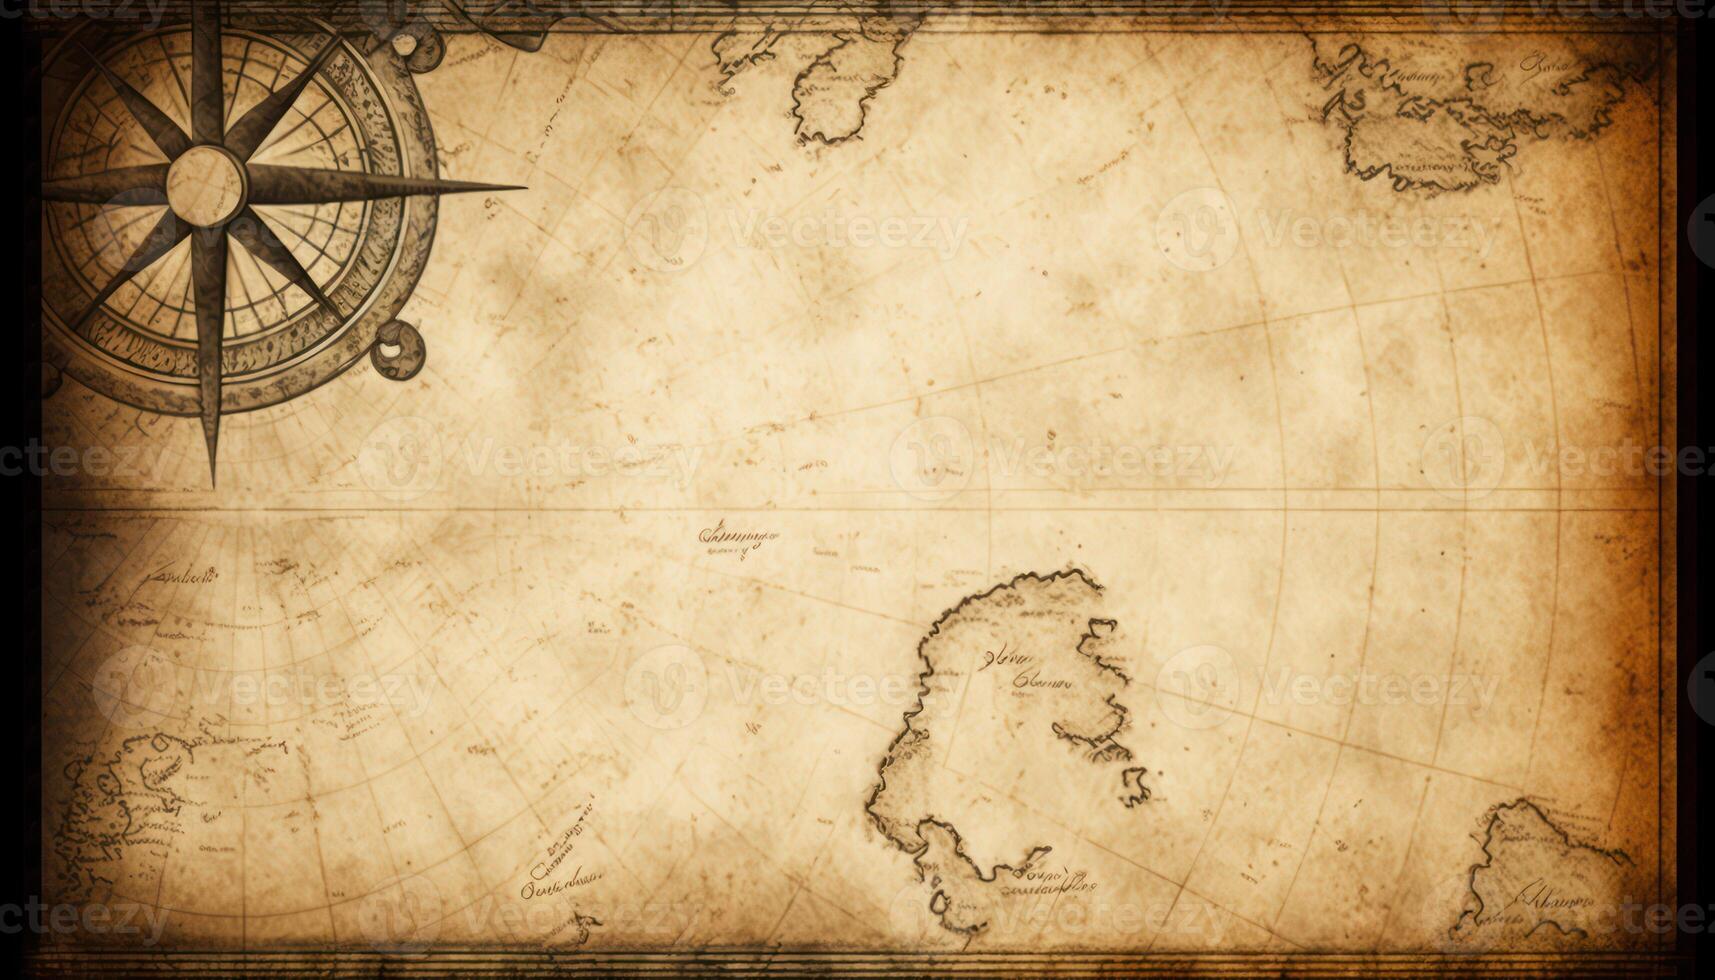 Old nautical grunge map background. photo